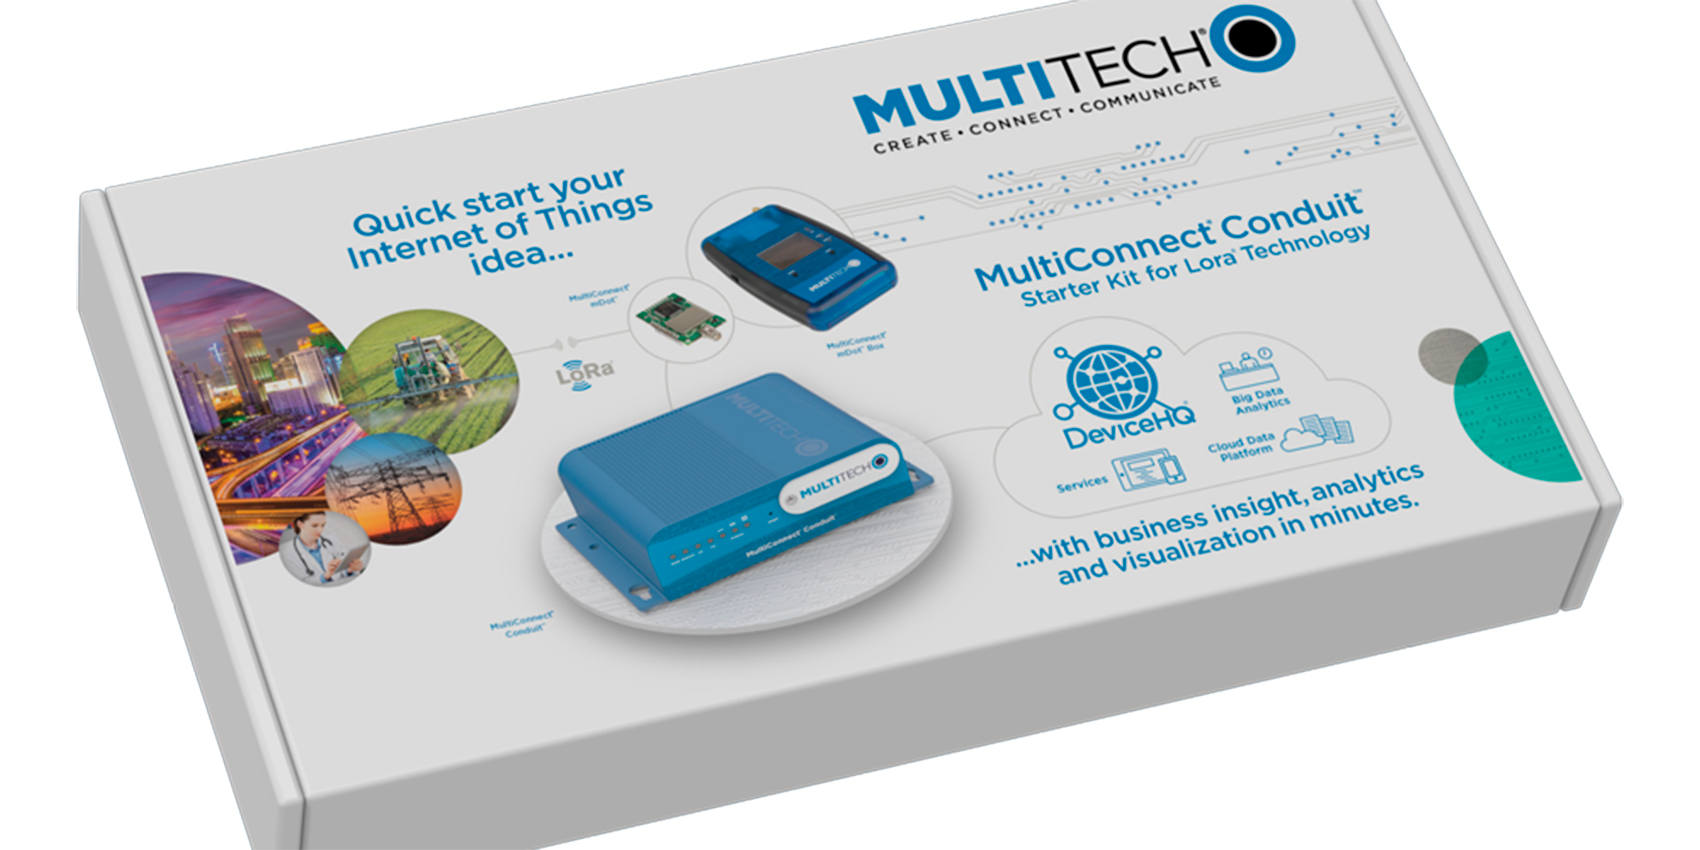 Las soluciones MultiConnect Conduit ahora disponen de opciones 4G-LTE, GNSS y Wi-Fi/BLE